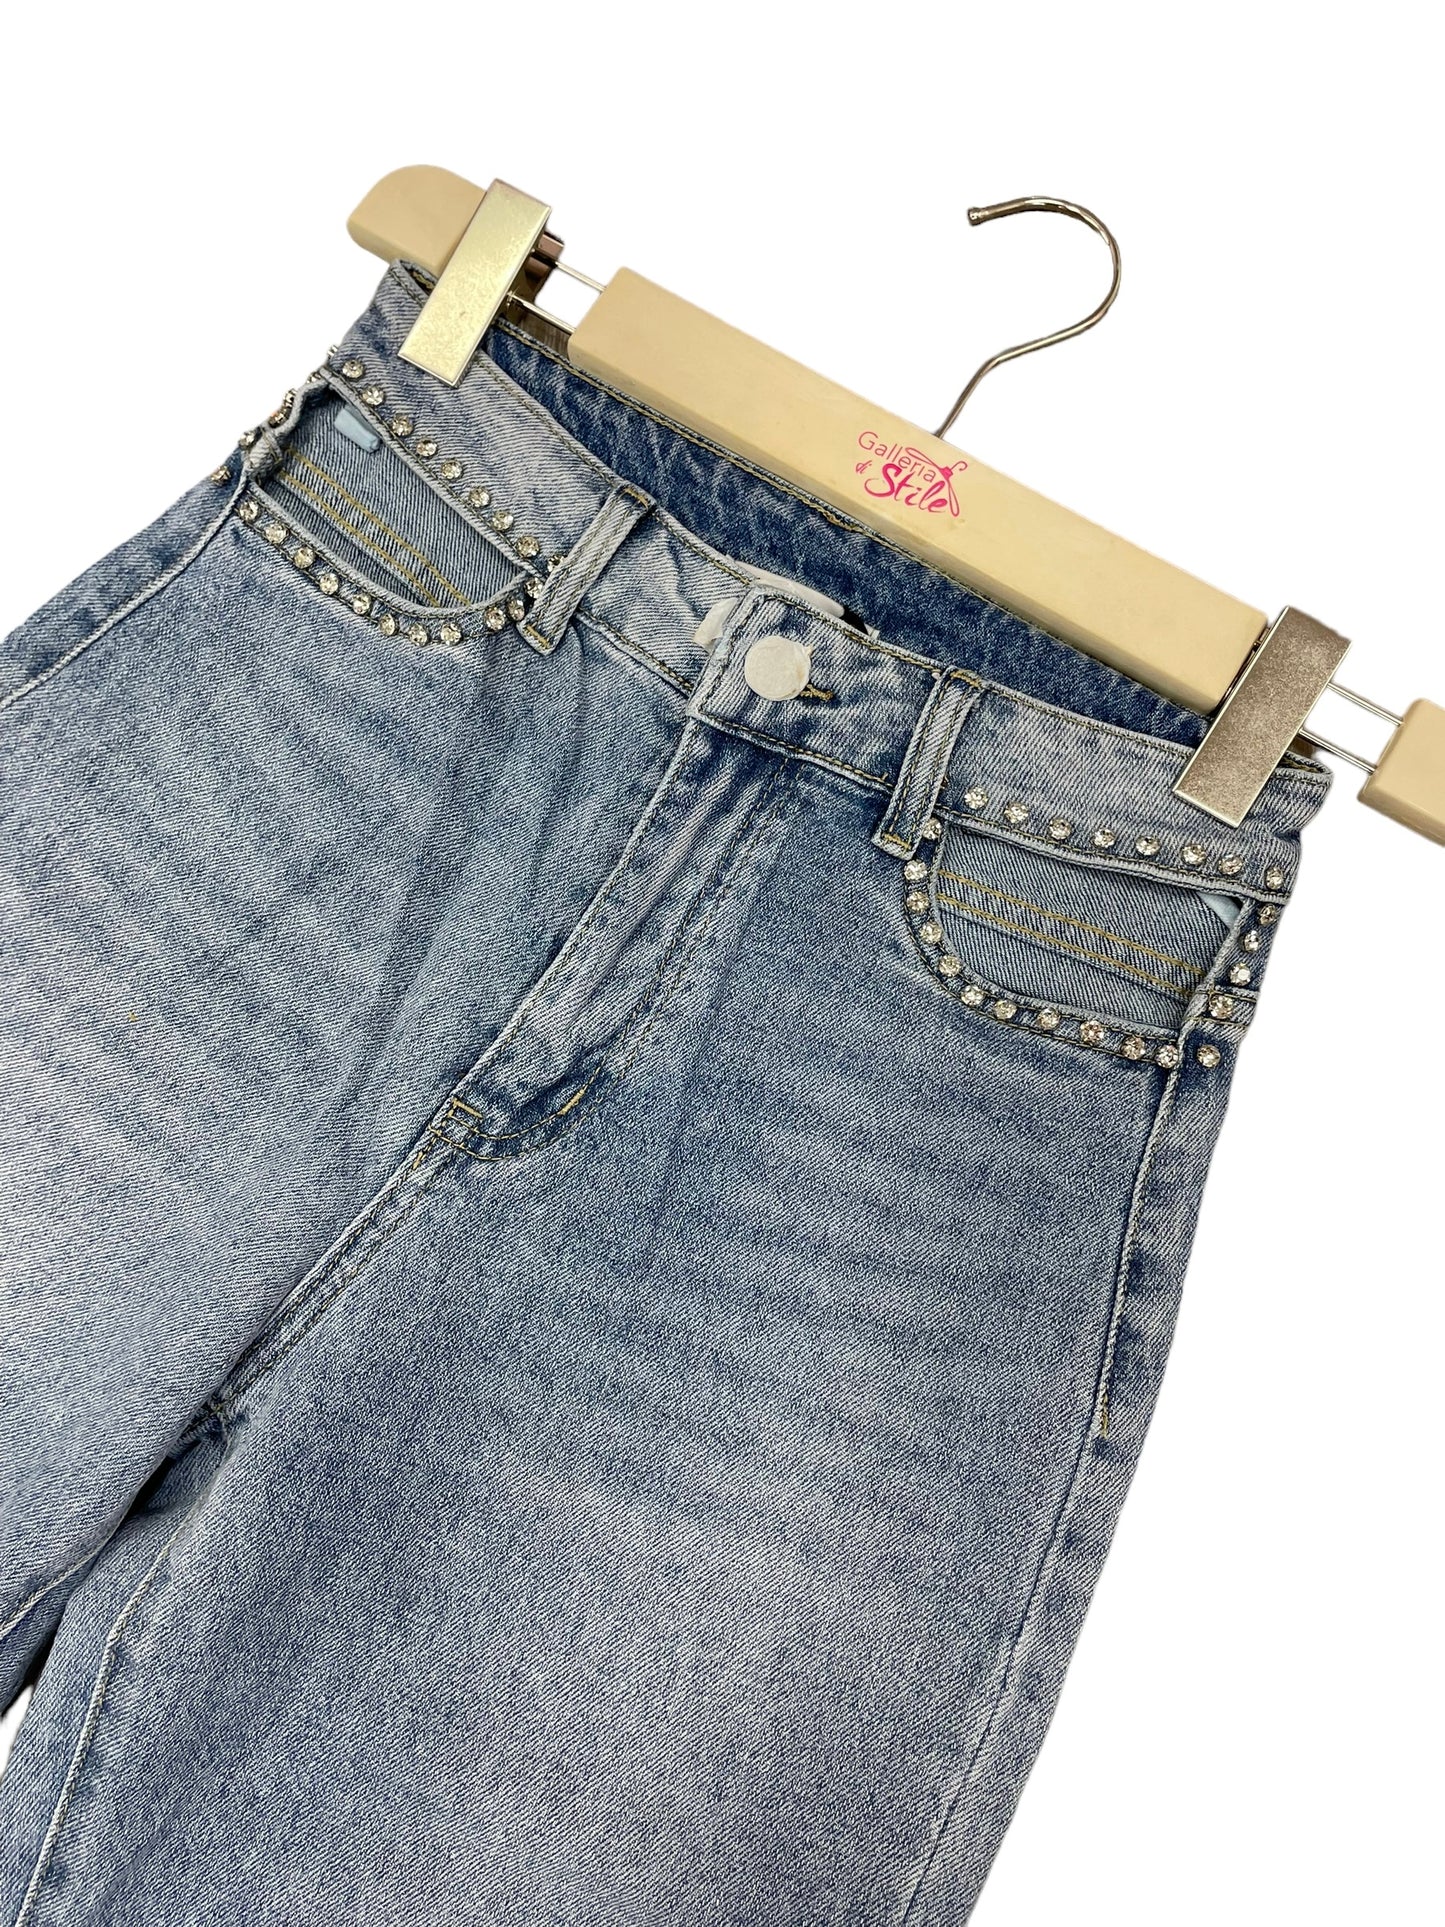 Jeans aperture brillanti - abbigliamento - Stilosa